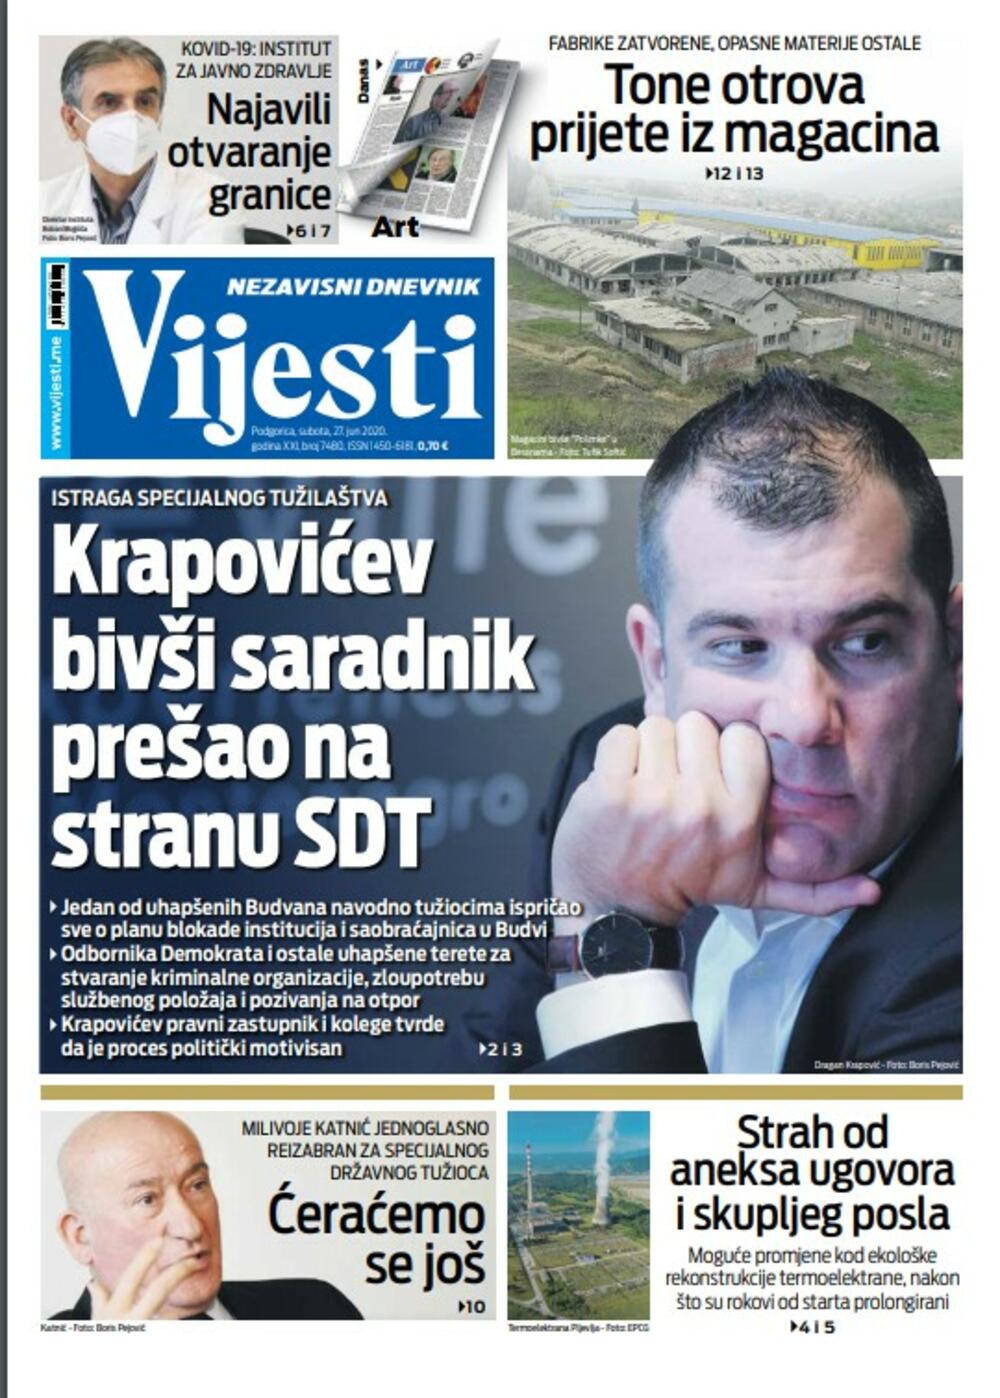 Naslovna strana "Vijesti" za 27. jun 2020., Foto: Vijesti